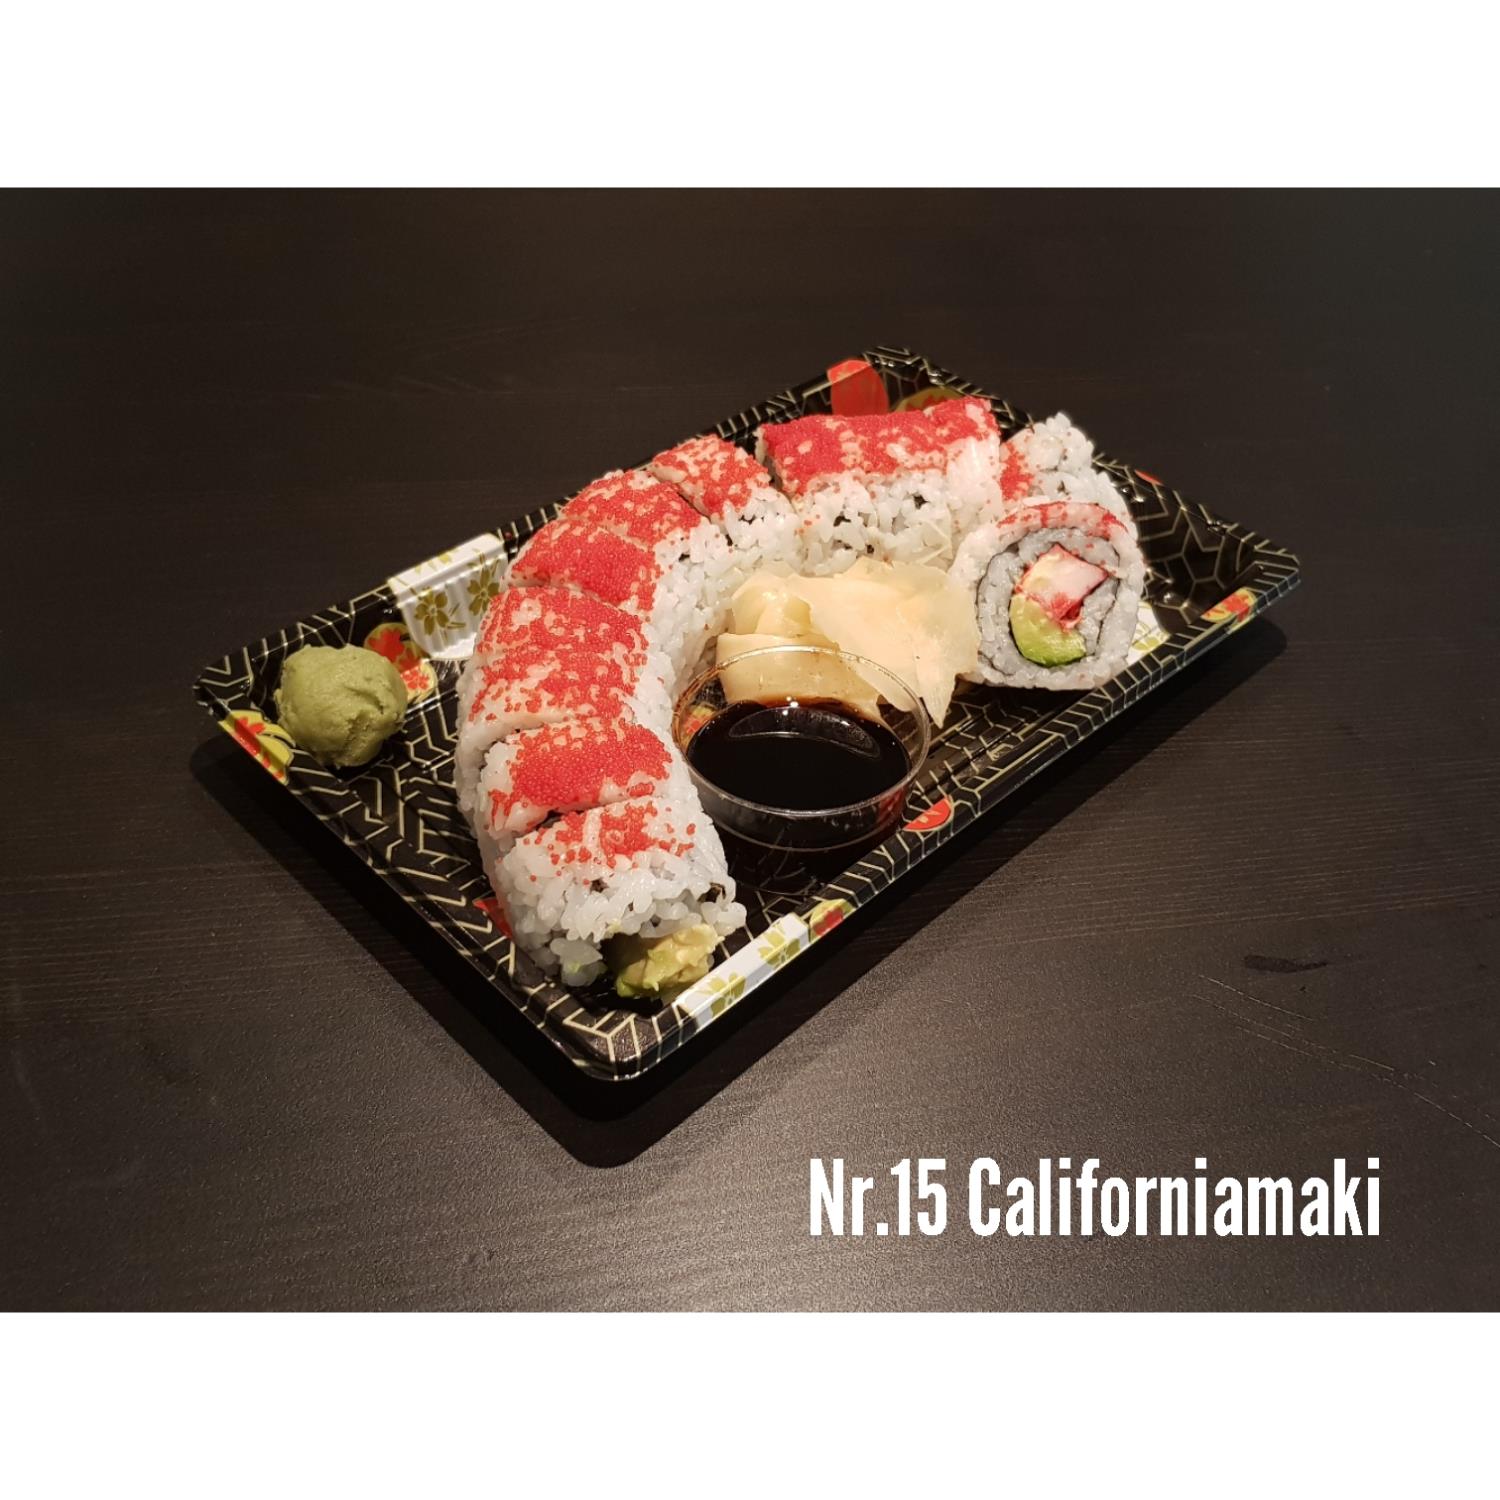 Nr. 15 California Roll Maki Futo